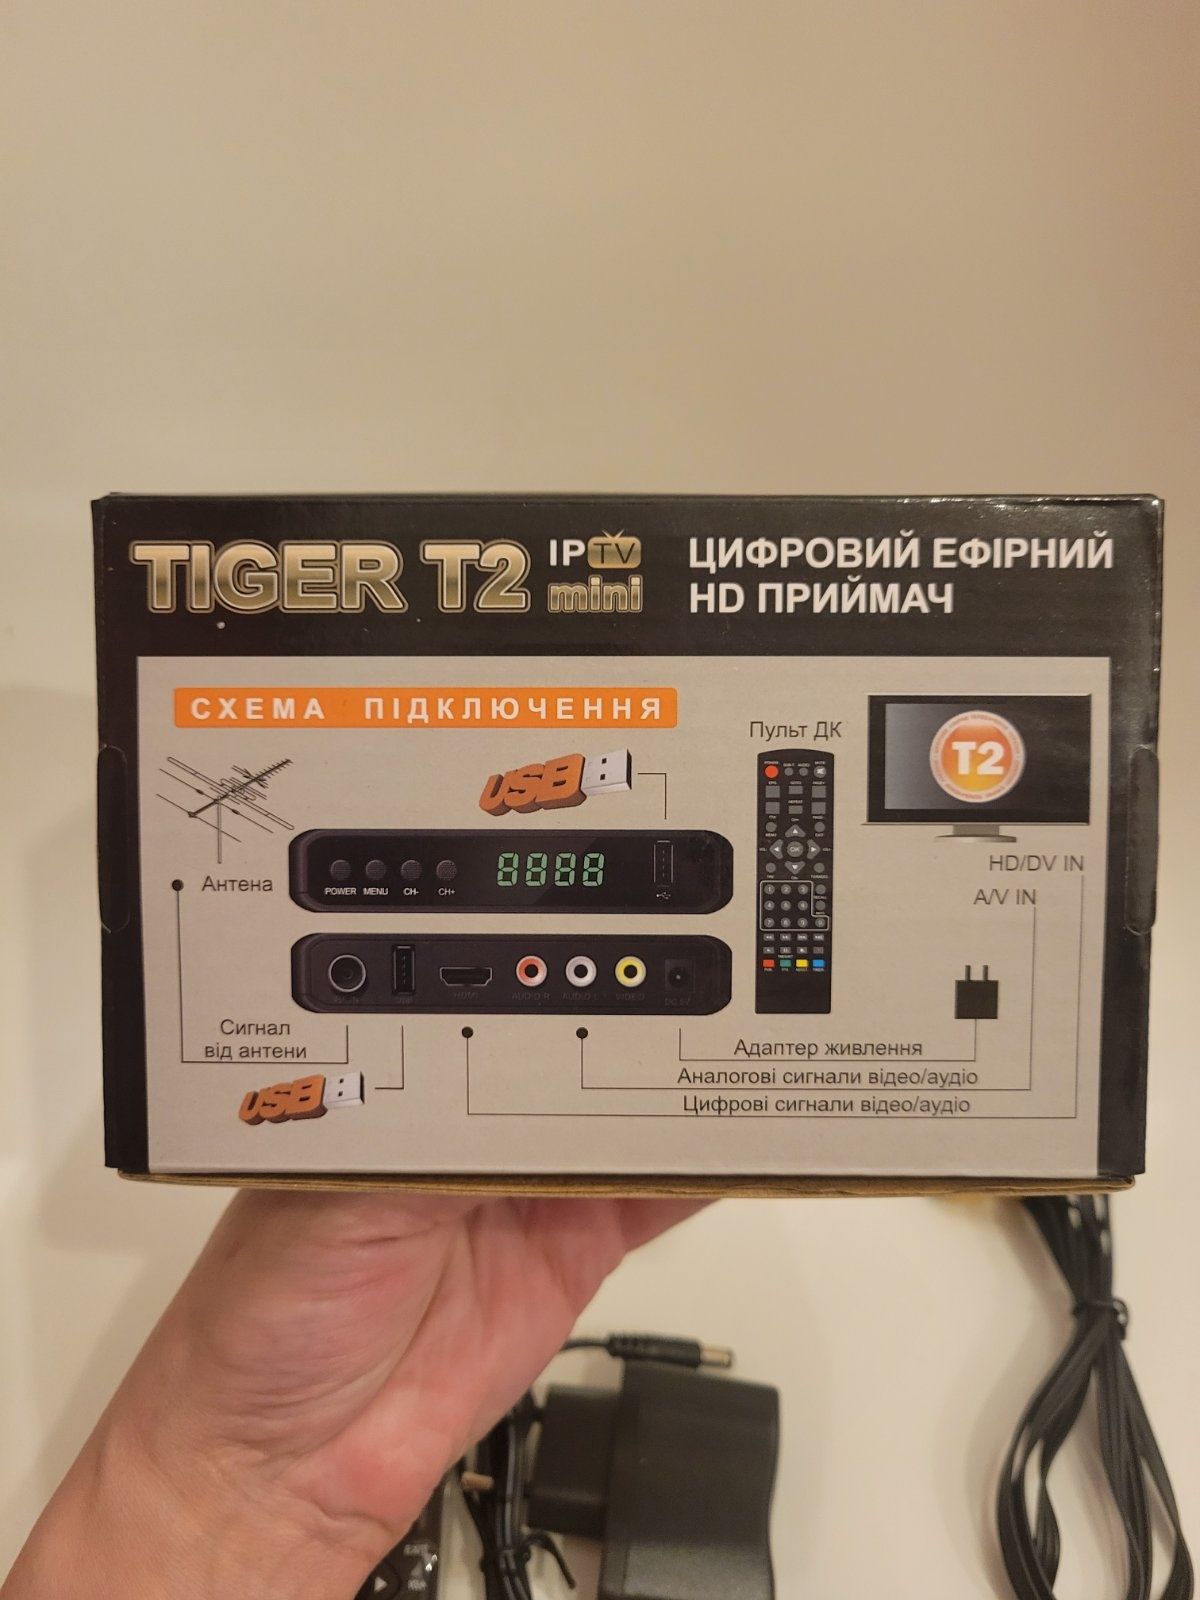 Тюнер T2 tiger IPTV mini приставка цифрова для телевізора телевизора